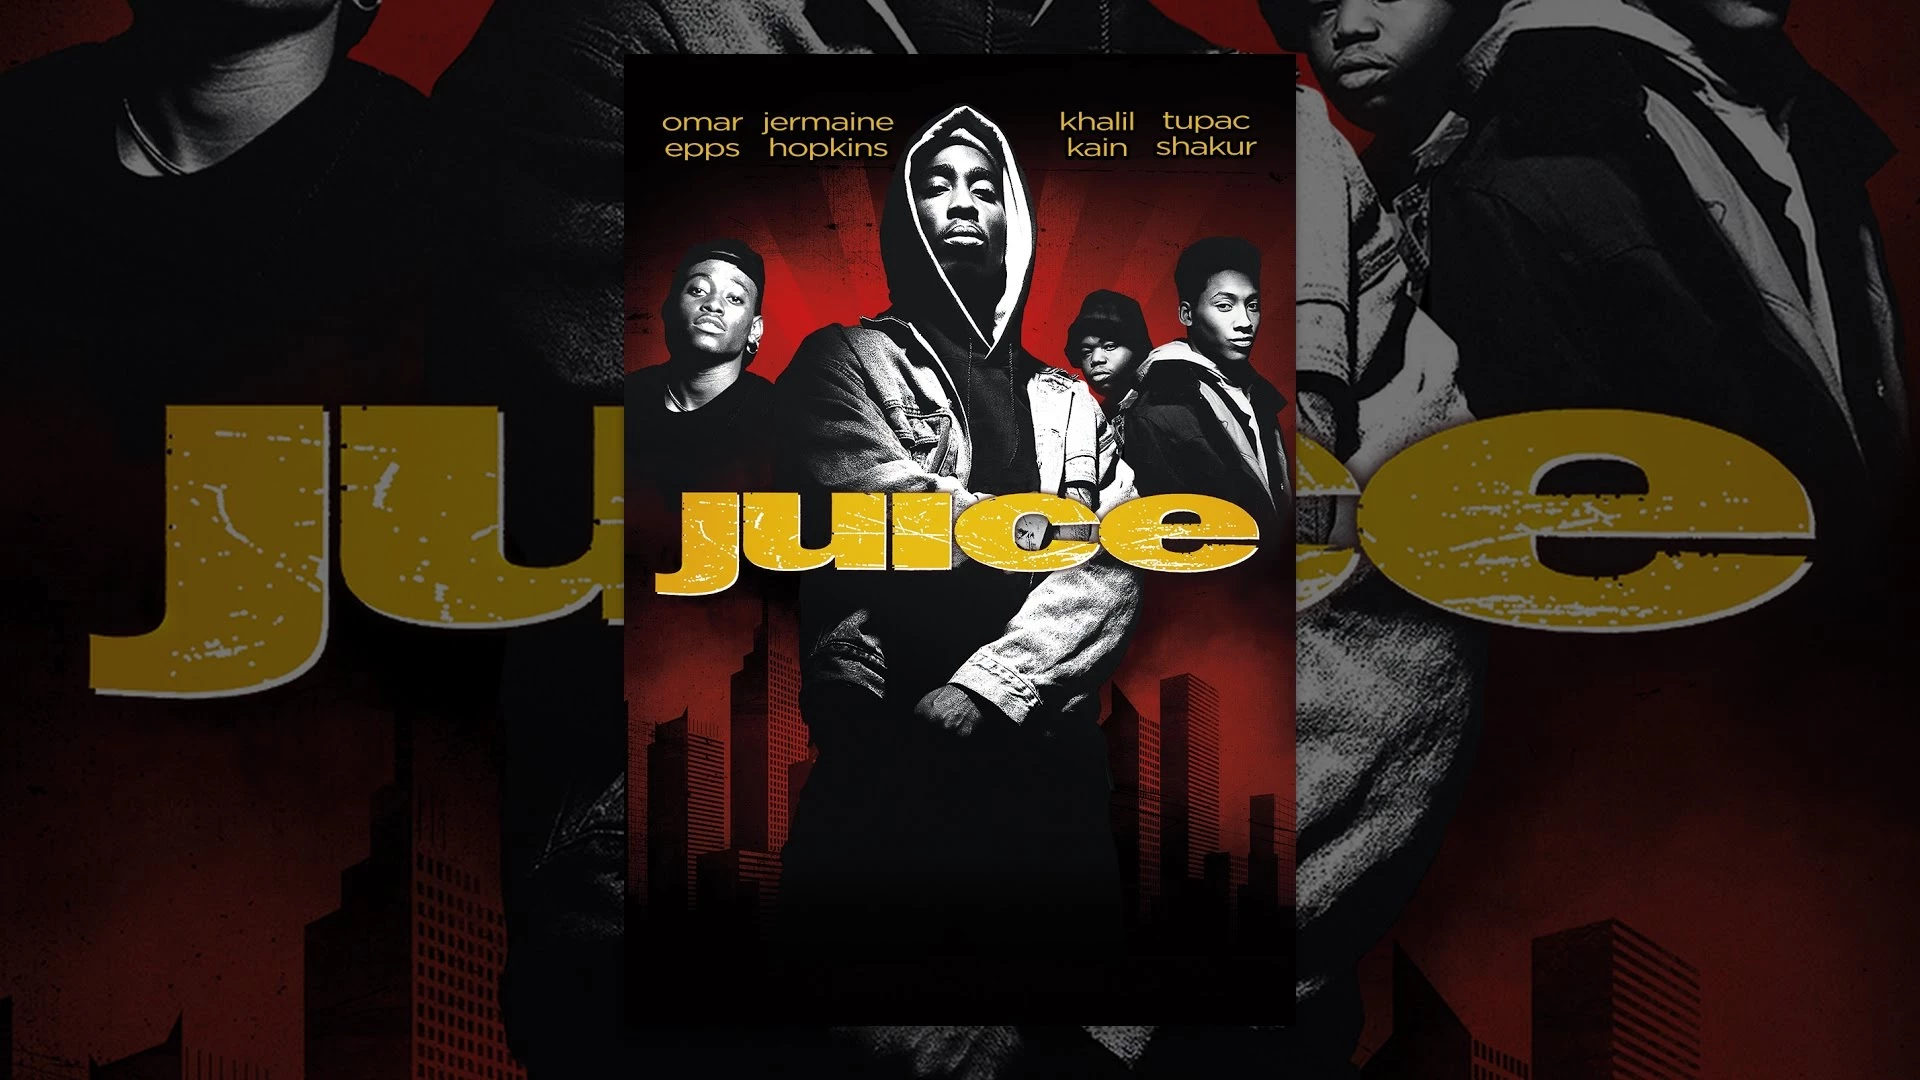 movies like boyz n the hood - Juice (1992)